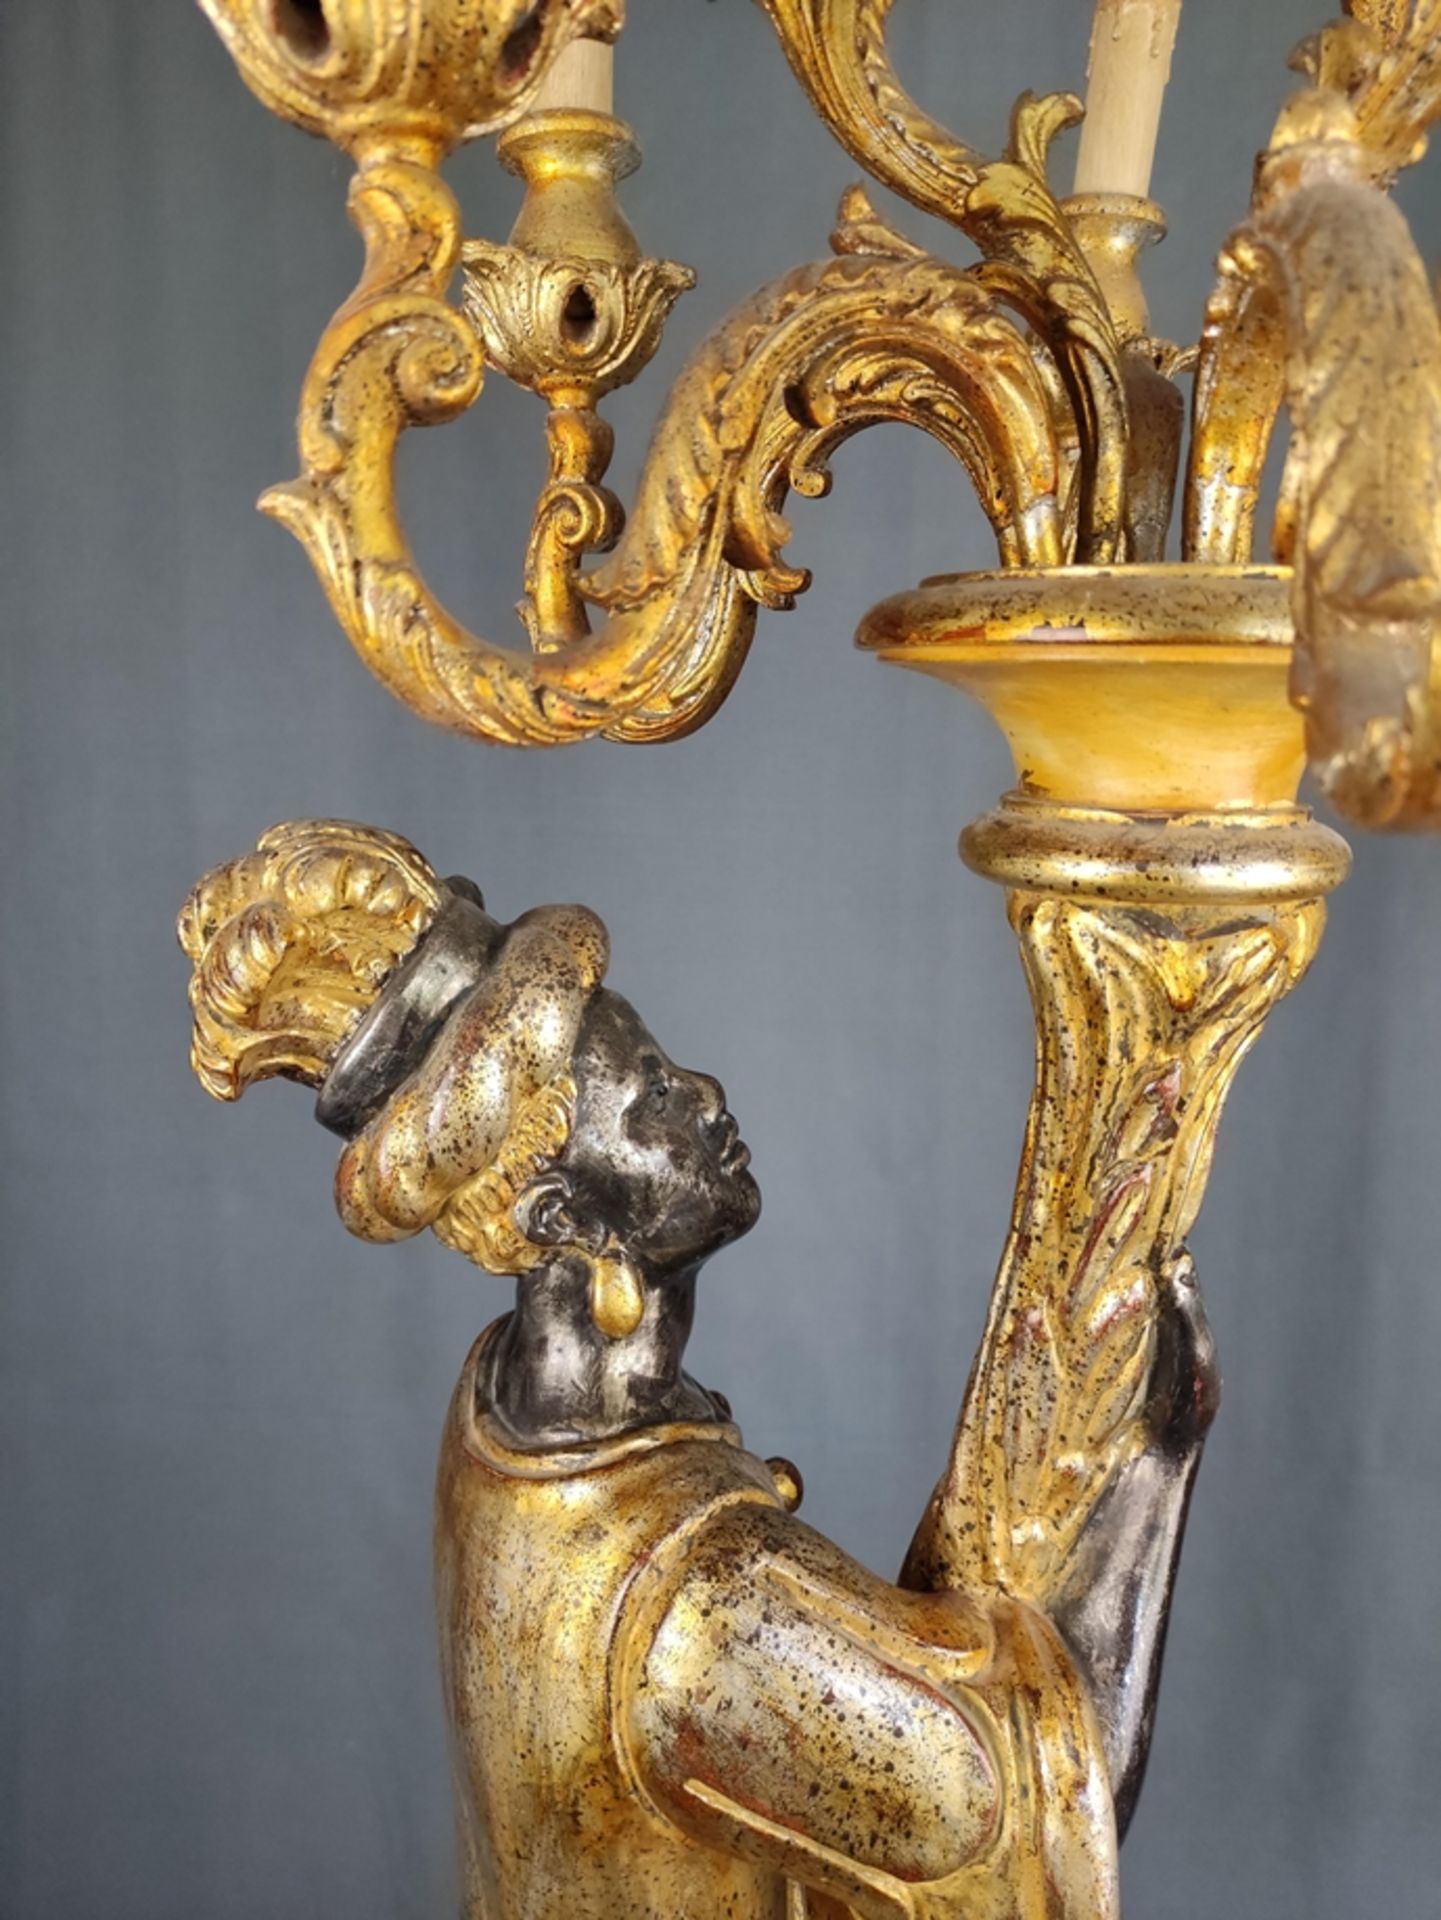 Venetian blackamoor figure candelabra lamp, baroqueising forms, upright standing figure with 9-bran - Image 3 of 3